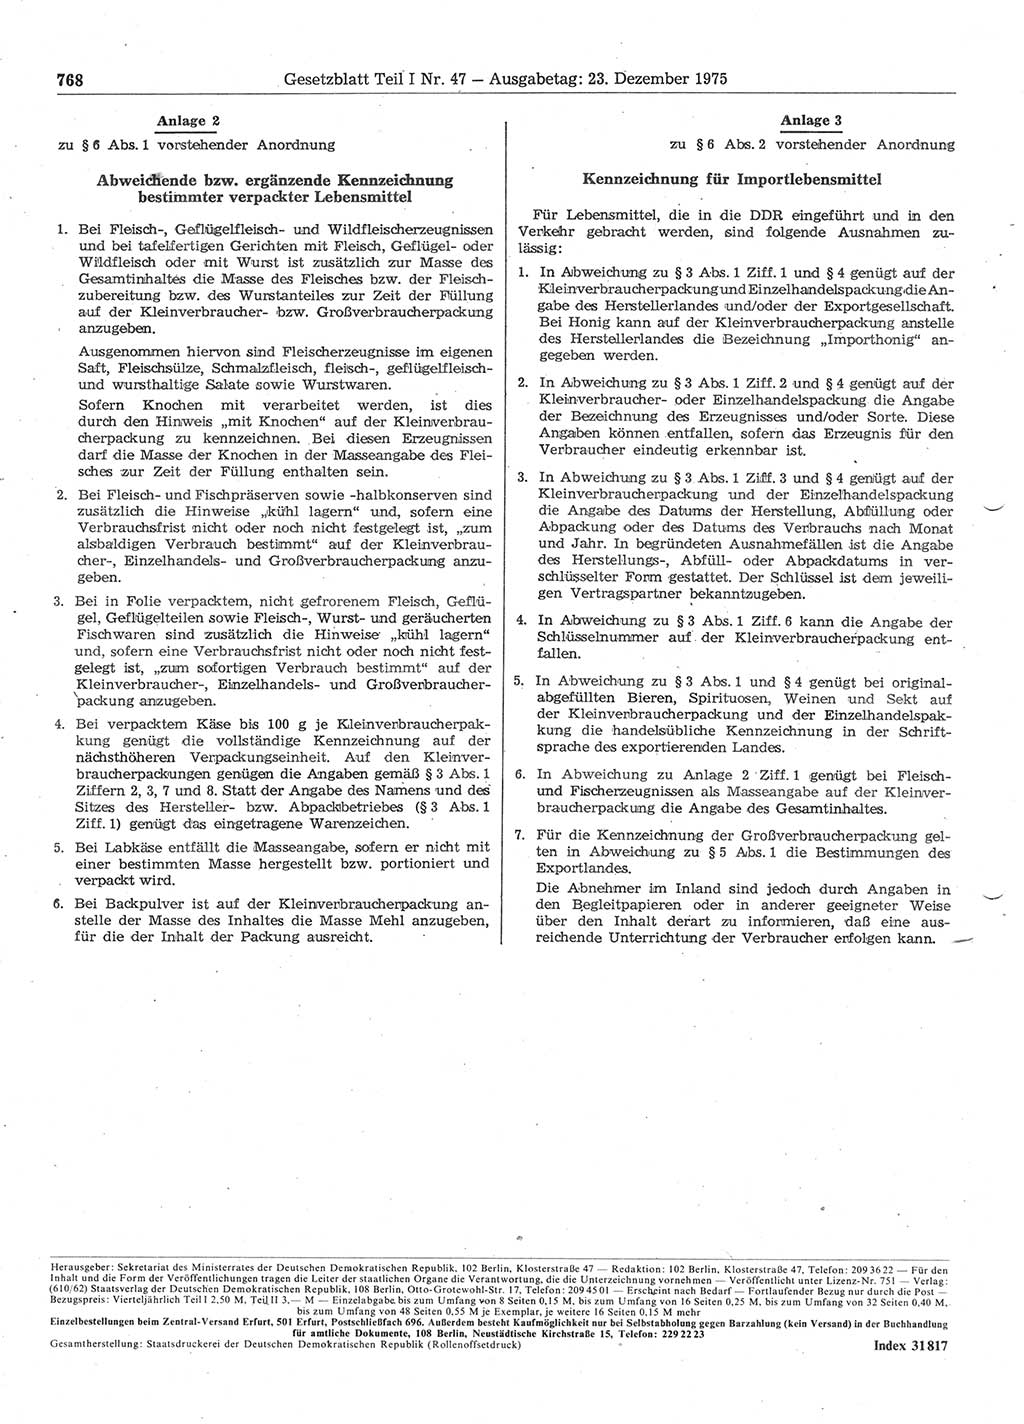 Gesetzblatt (GBl.) der Deutschen Demokratischen Republik (DDR) Teil Ⅰ 1975, Seite 768 (GBl. DDR Ⅰ 1975, S. 768)